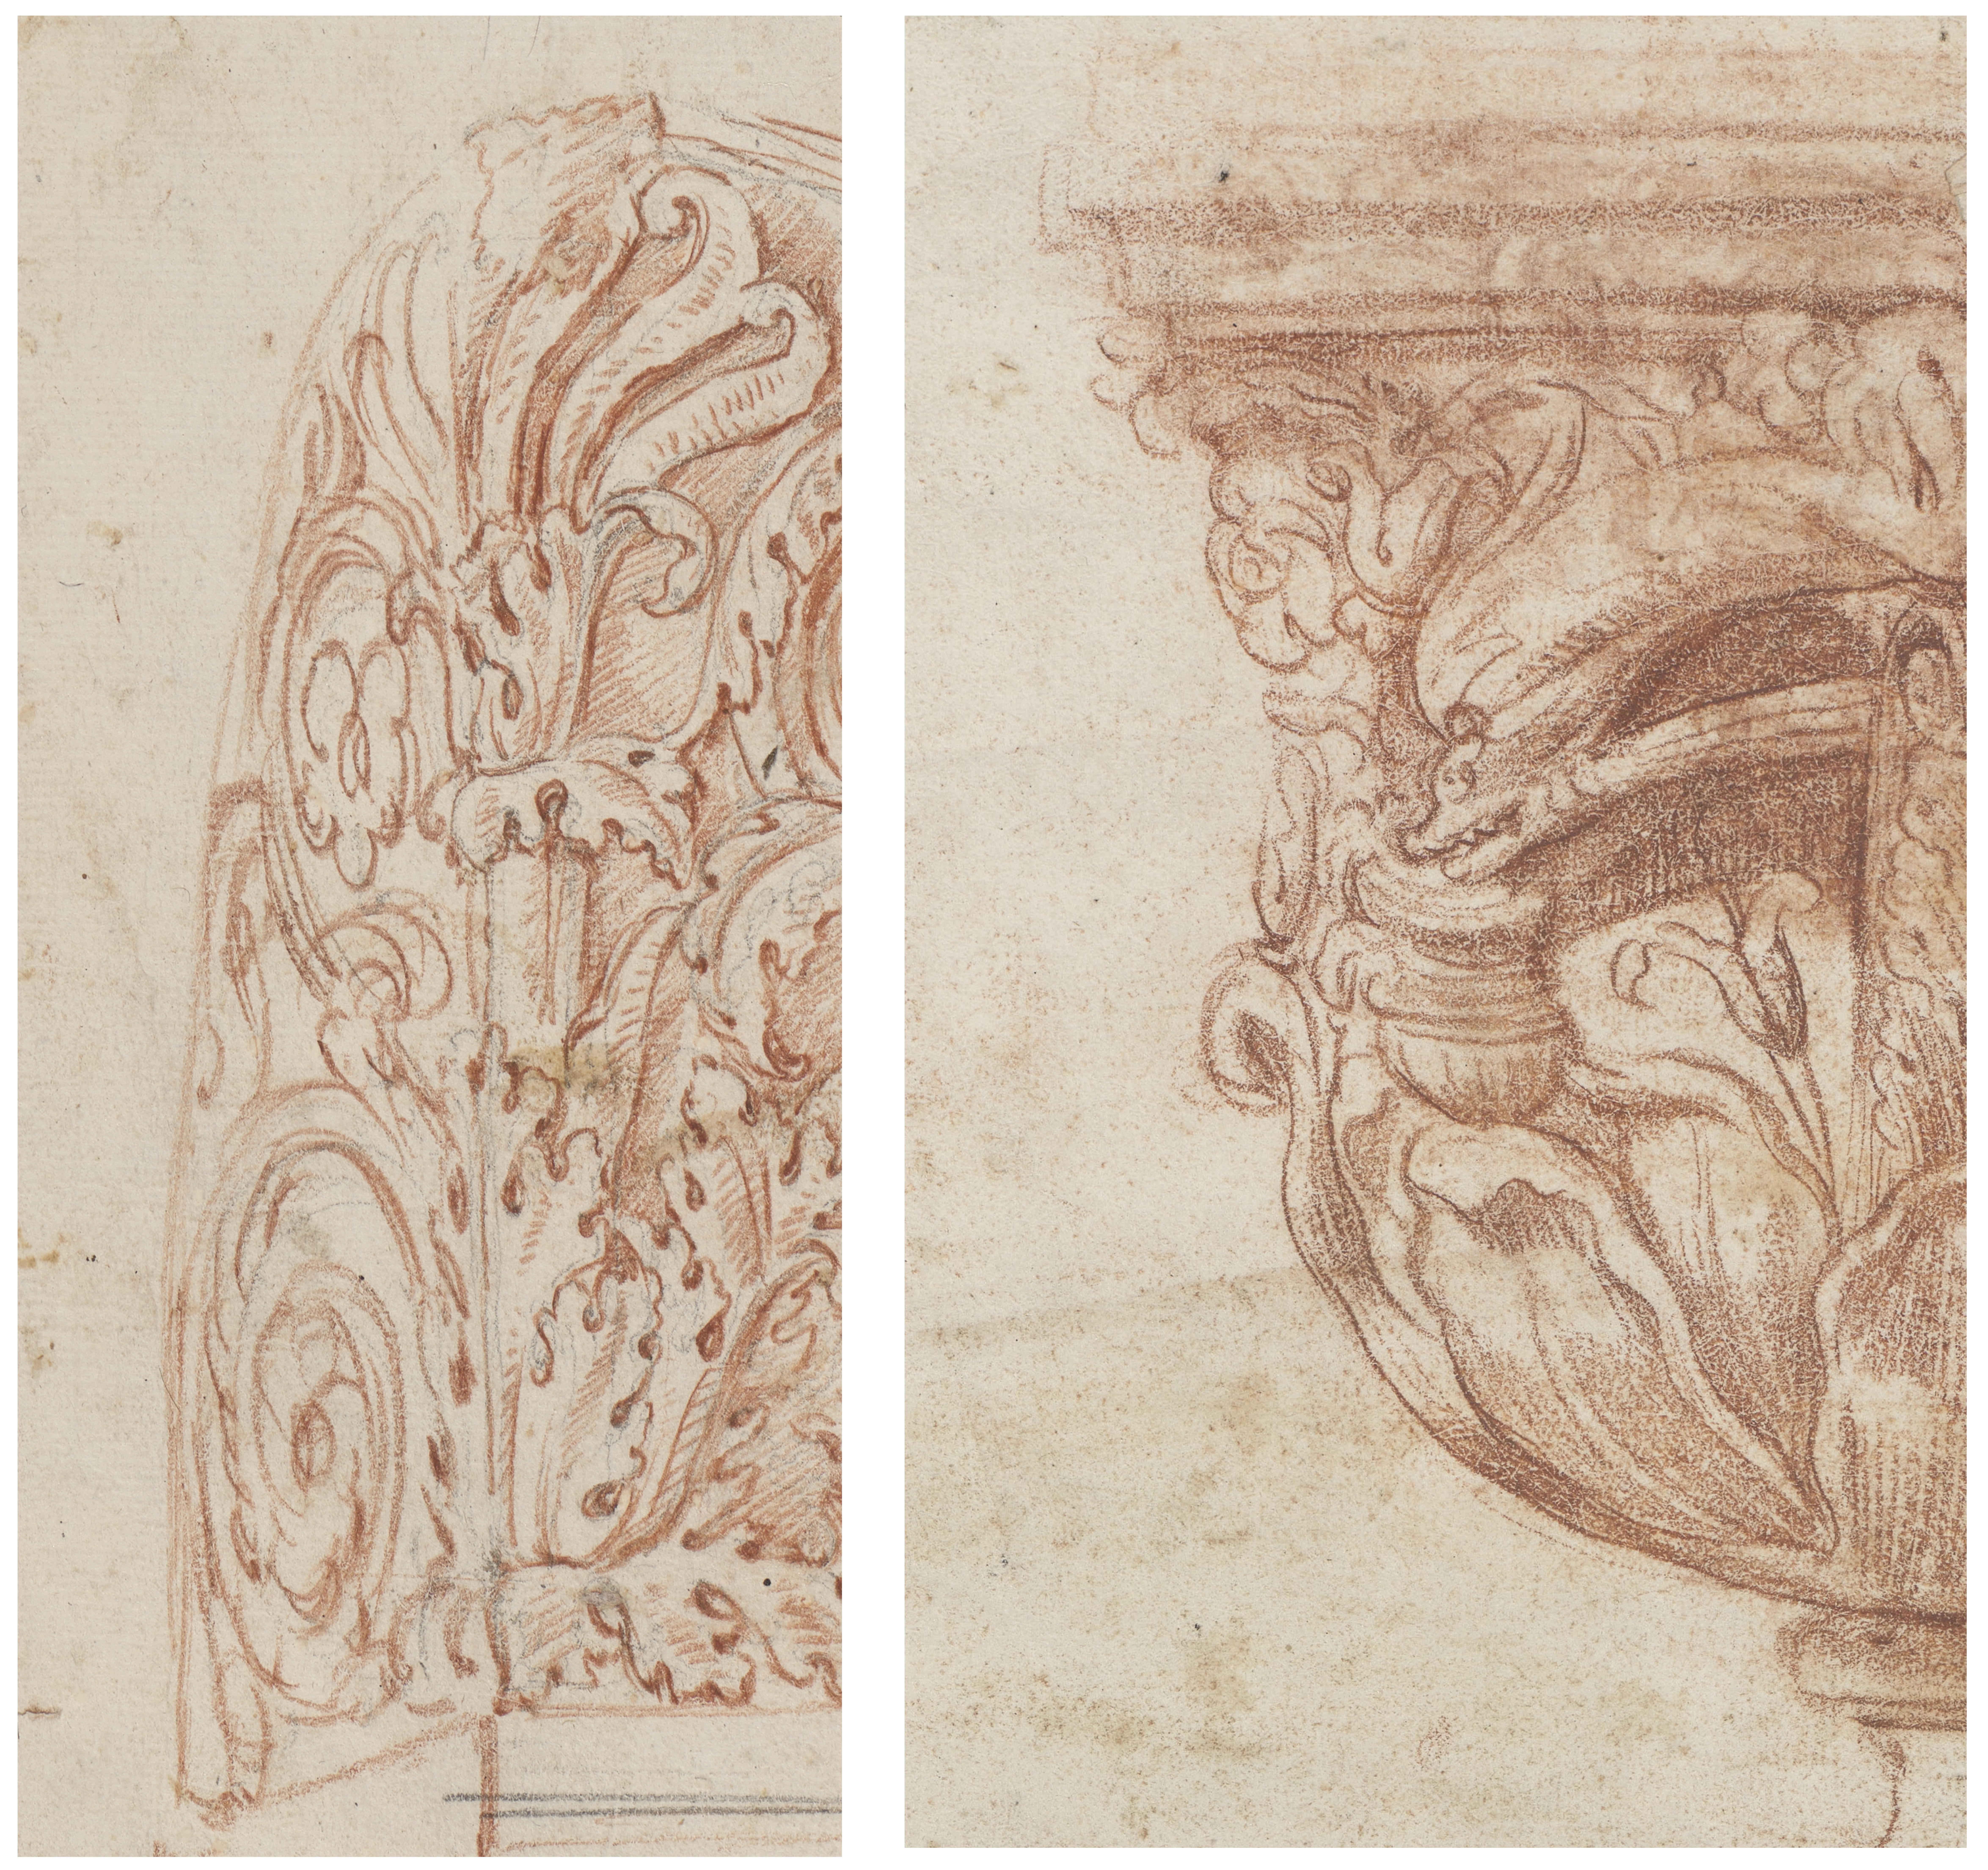 Bildmontage aus zwei Details von Rötelzeichnungen aus dem Bestand der Piranesi-Alben der Kunsthalle Karlsruhe